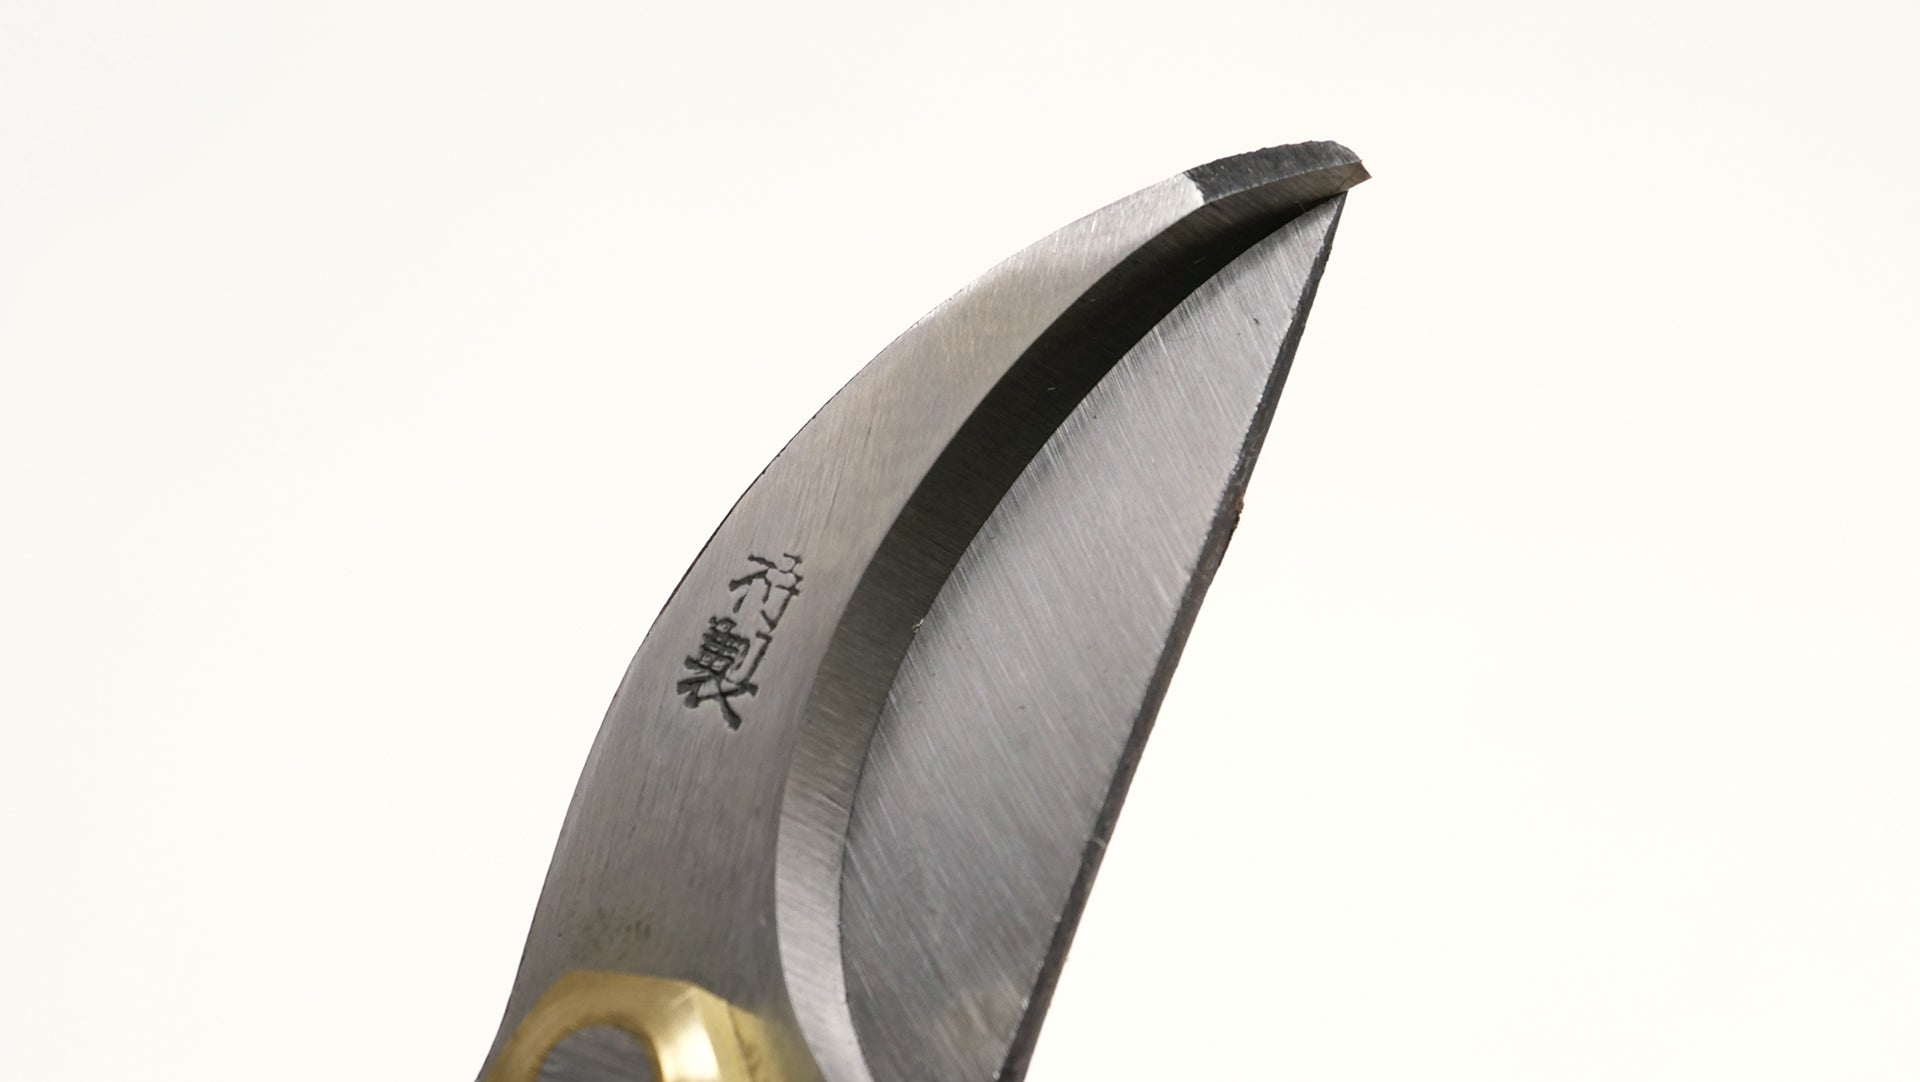 Nasu Pruning Shears 7.09 in (180 mm) - Japanese Gardening Tools